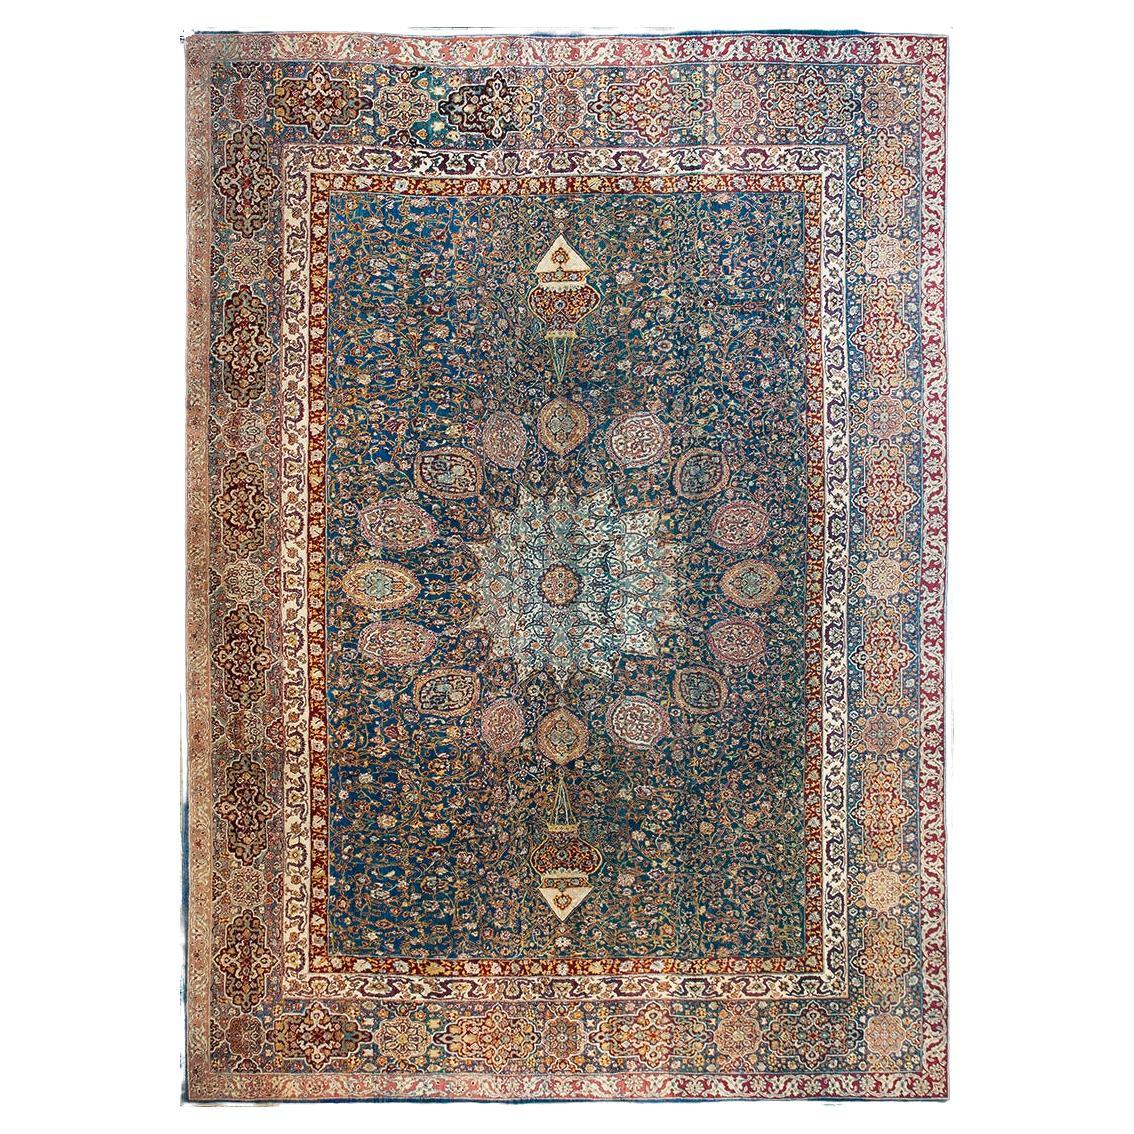 Indischer Agra-Teppich des späten 19. Jahrhunderts ( 10'8" - 14'10" - 325 x 452")